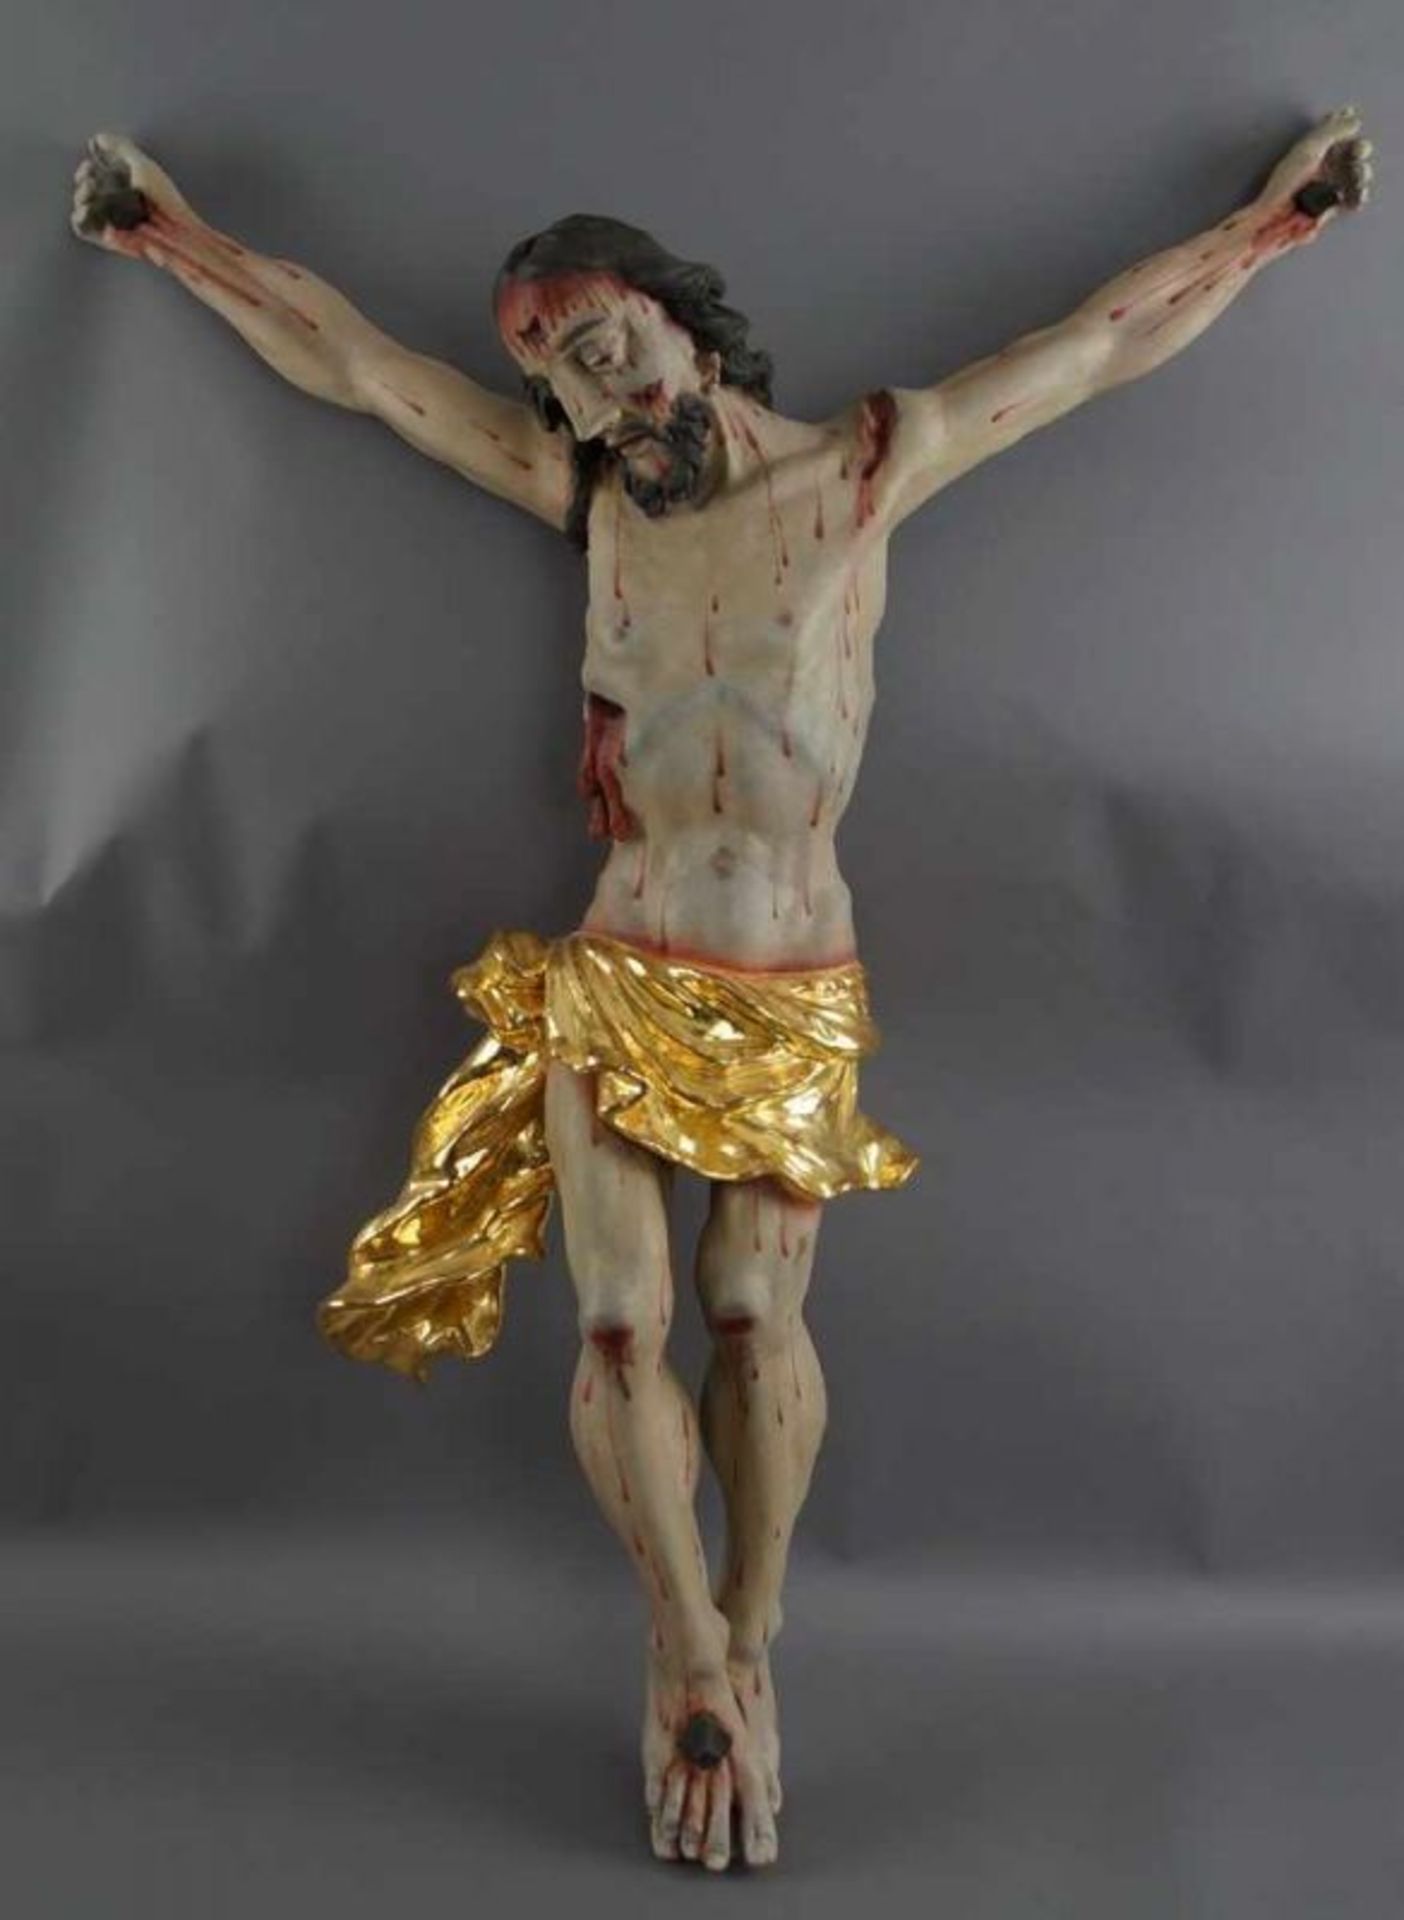 Barocker Korpus Christi, Holz geschnitzt und gefasst, 18. JH, rest., 92x79cm 20.17 % buyer's premium